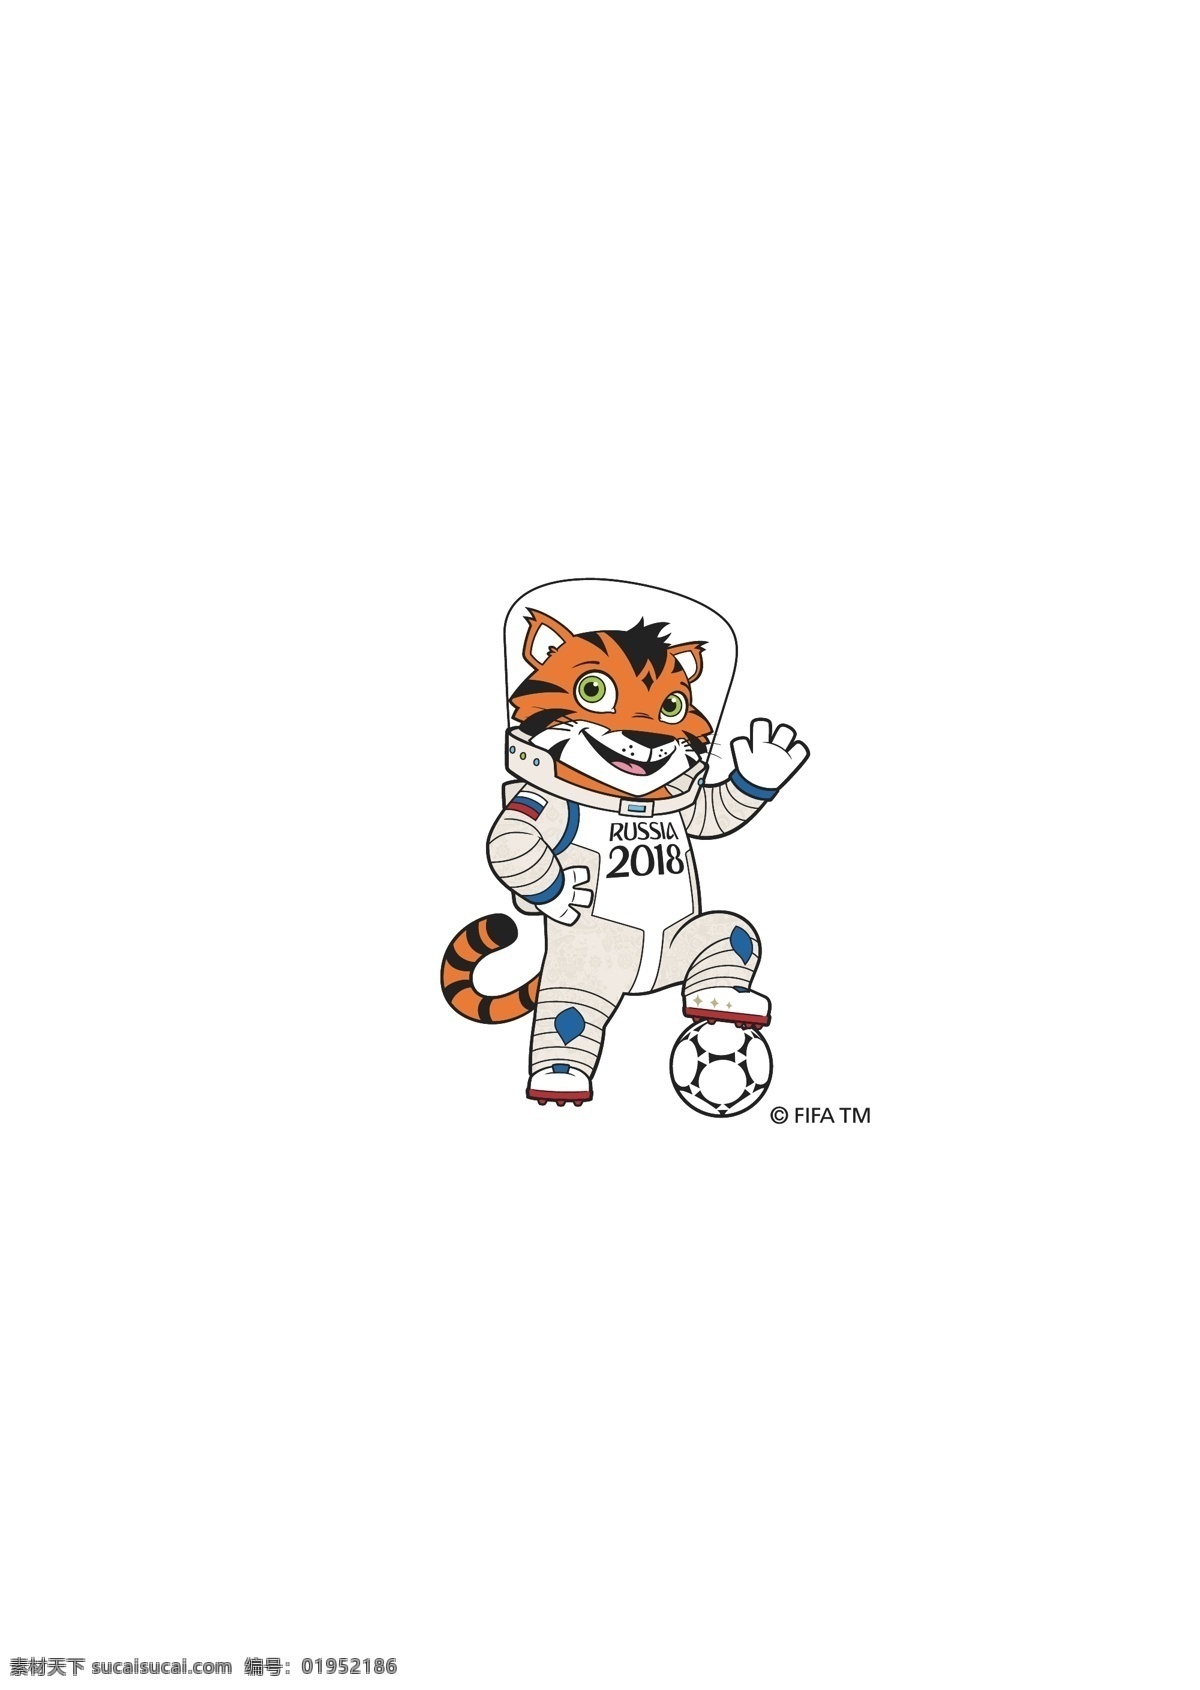 俄罗斯 世界杯 吉祥物 狼 虎 狐狸 足球 卡通 fifa 插画 动漫动画 动漫人物